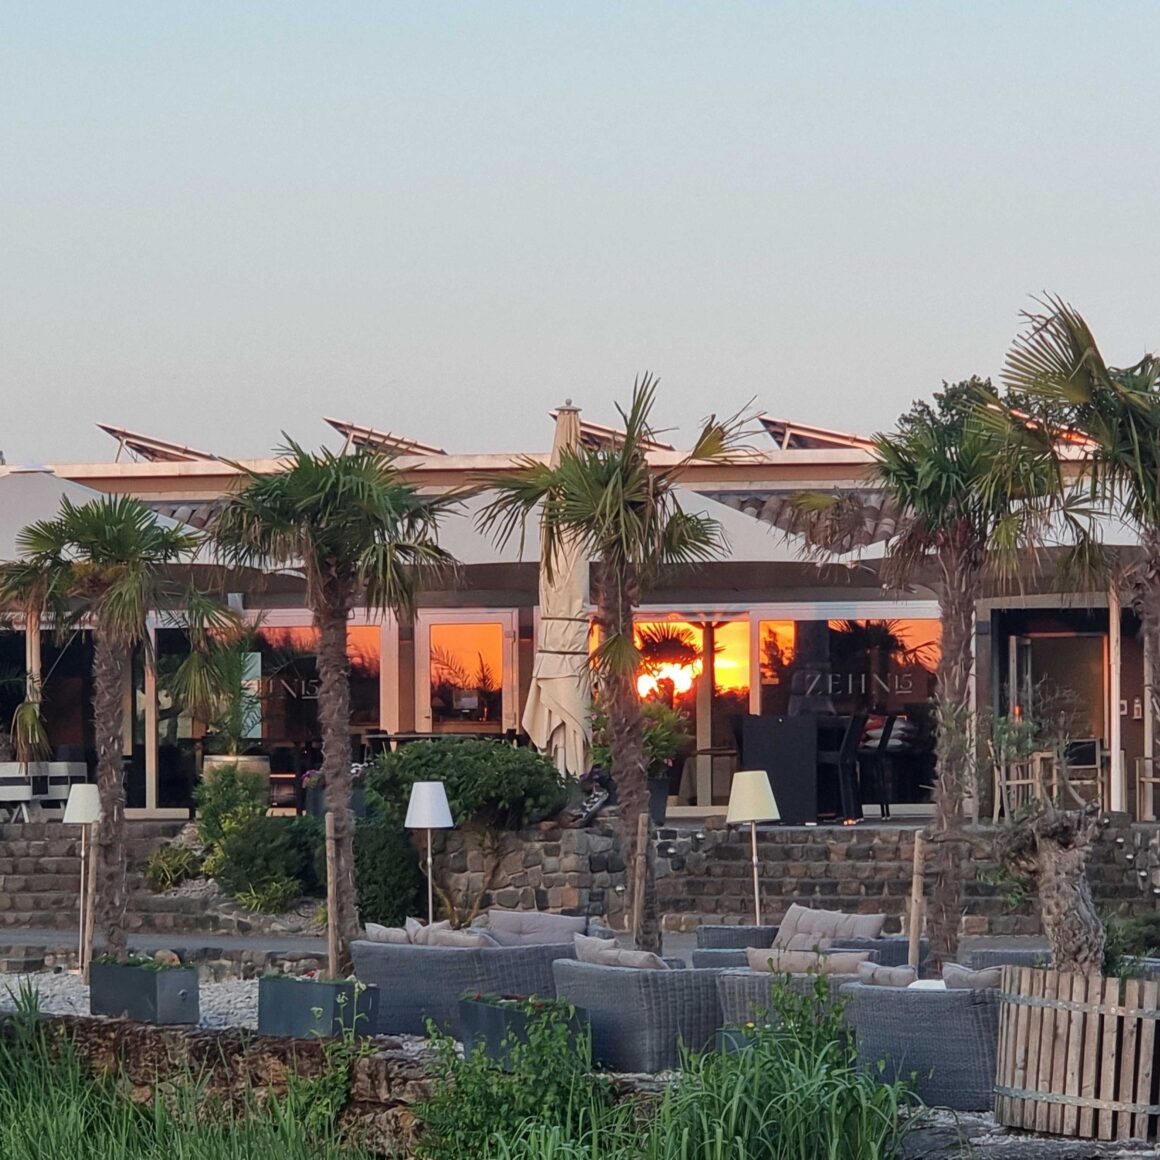 Außenbereich vom Golf Club Machern mit Sitzgelegenheiten, großen Sonnenschirmen und großen Palmen